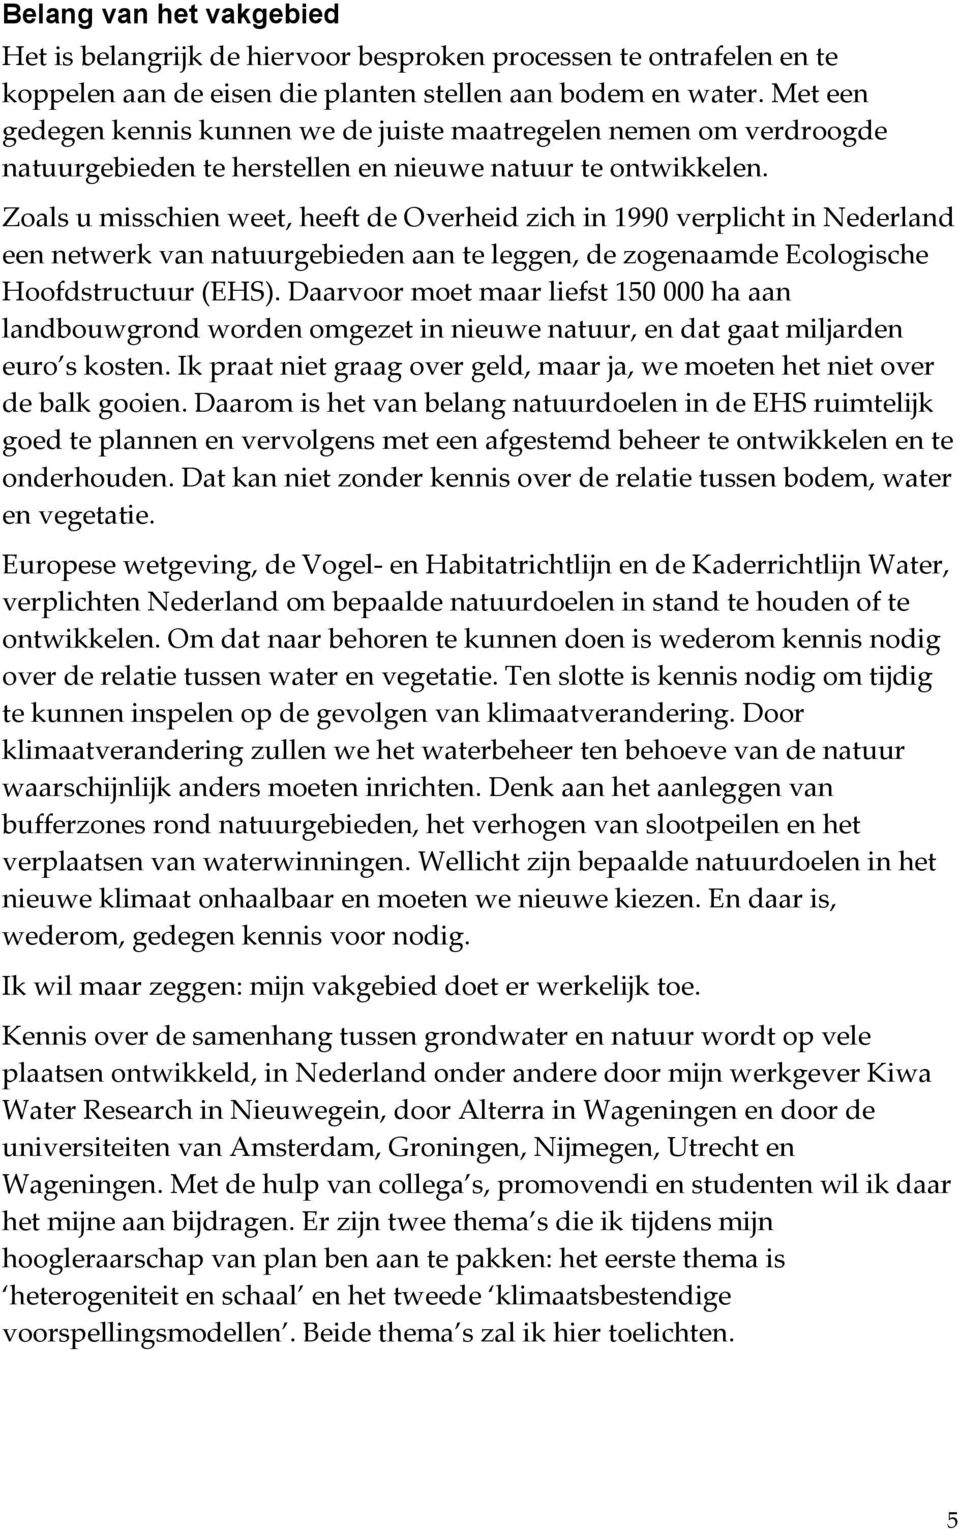 Zoals u misschien weet, heeft de Overheid zich in 1990 verplicht in Nederland een netwerk van natuurgebieden aan te leggen, de zogenaamde Ecologische Hoofdstructuur (EHS).